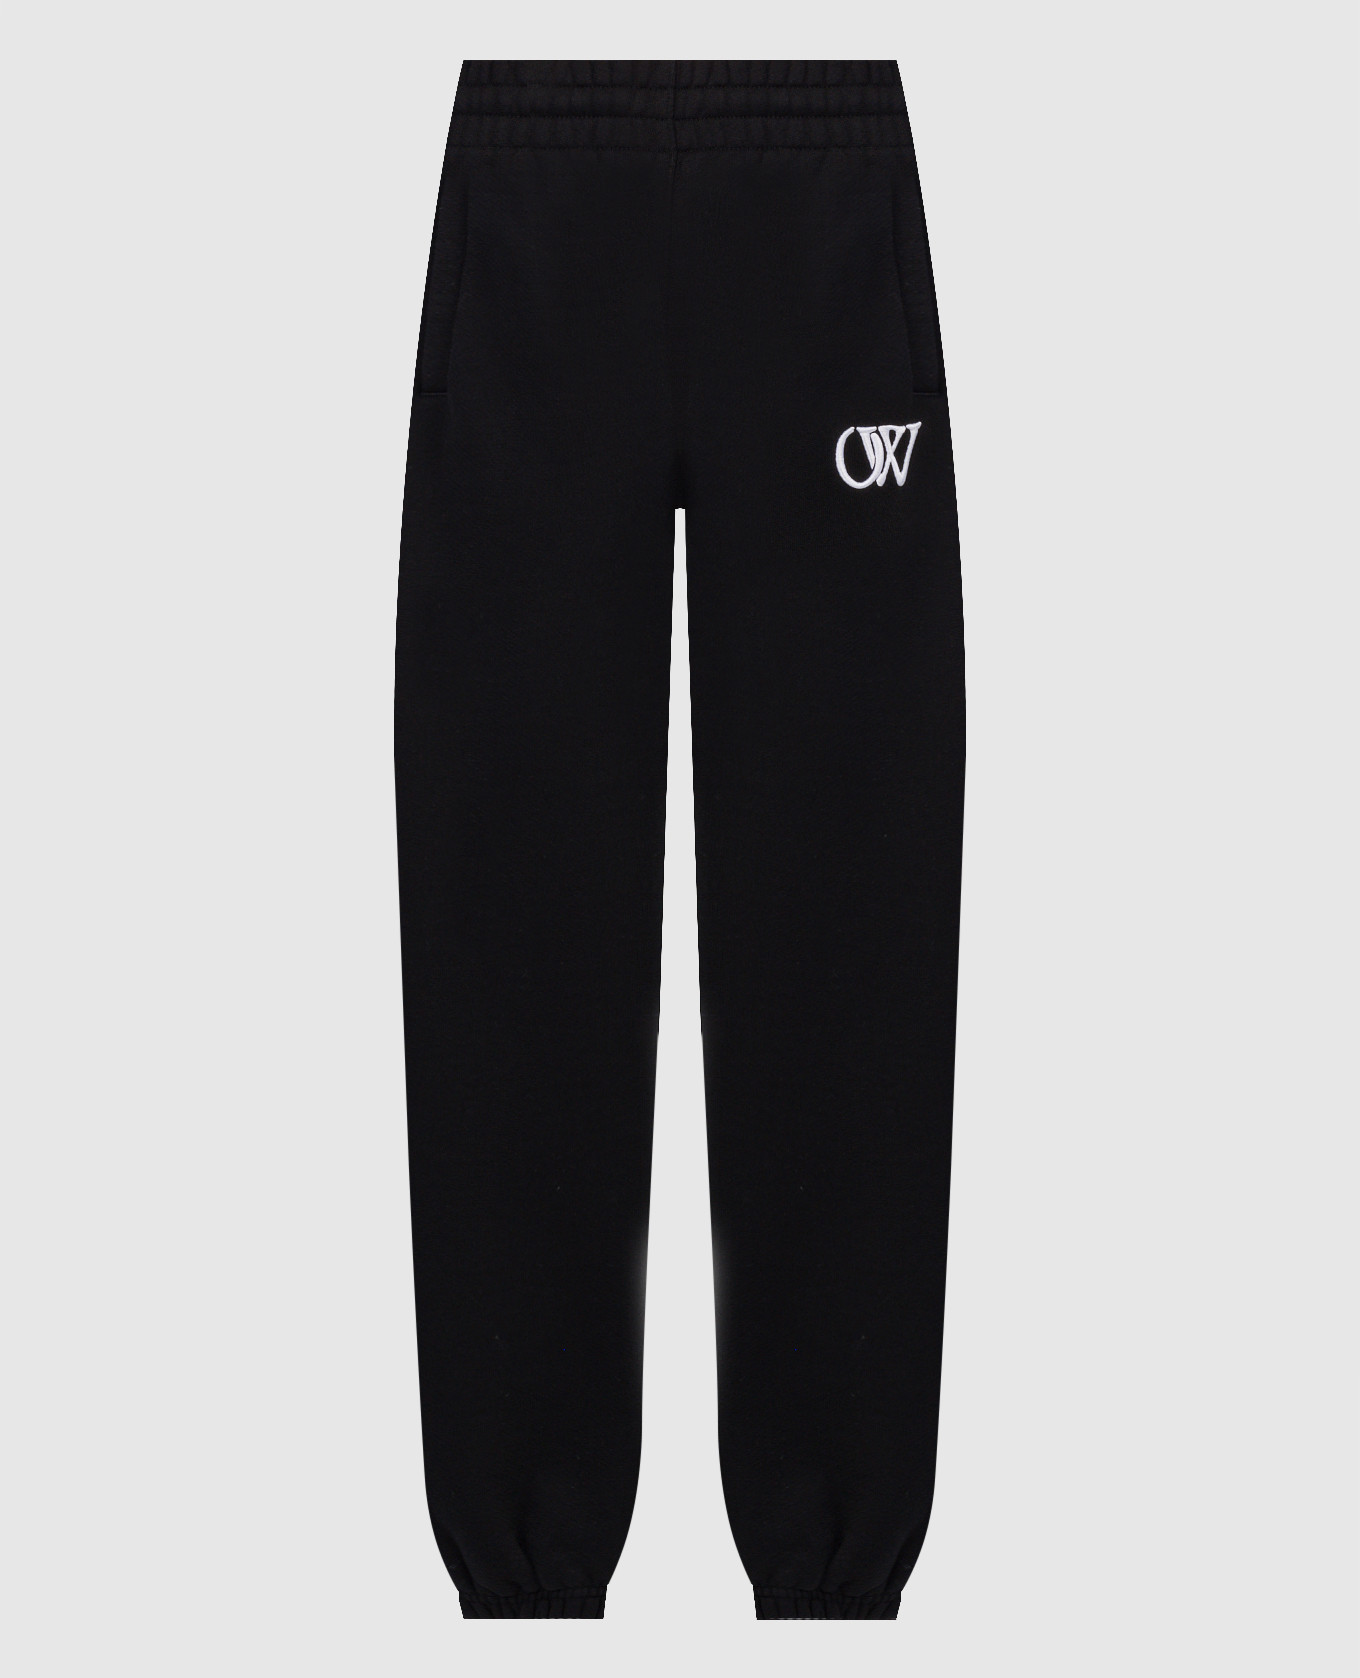 Черные джогеры с контрастной вышивкой логотипа OW